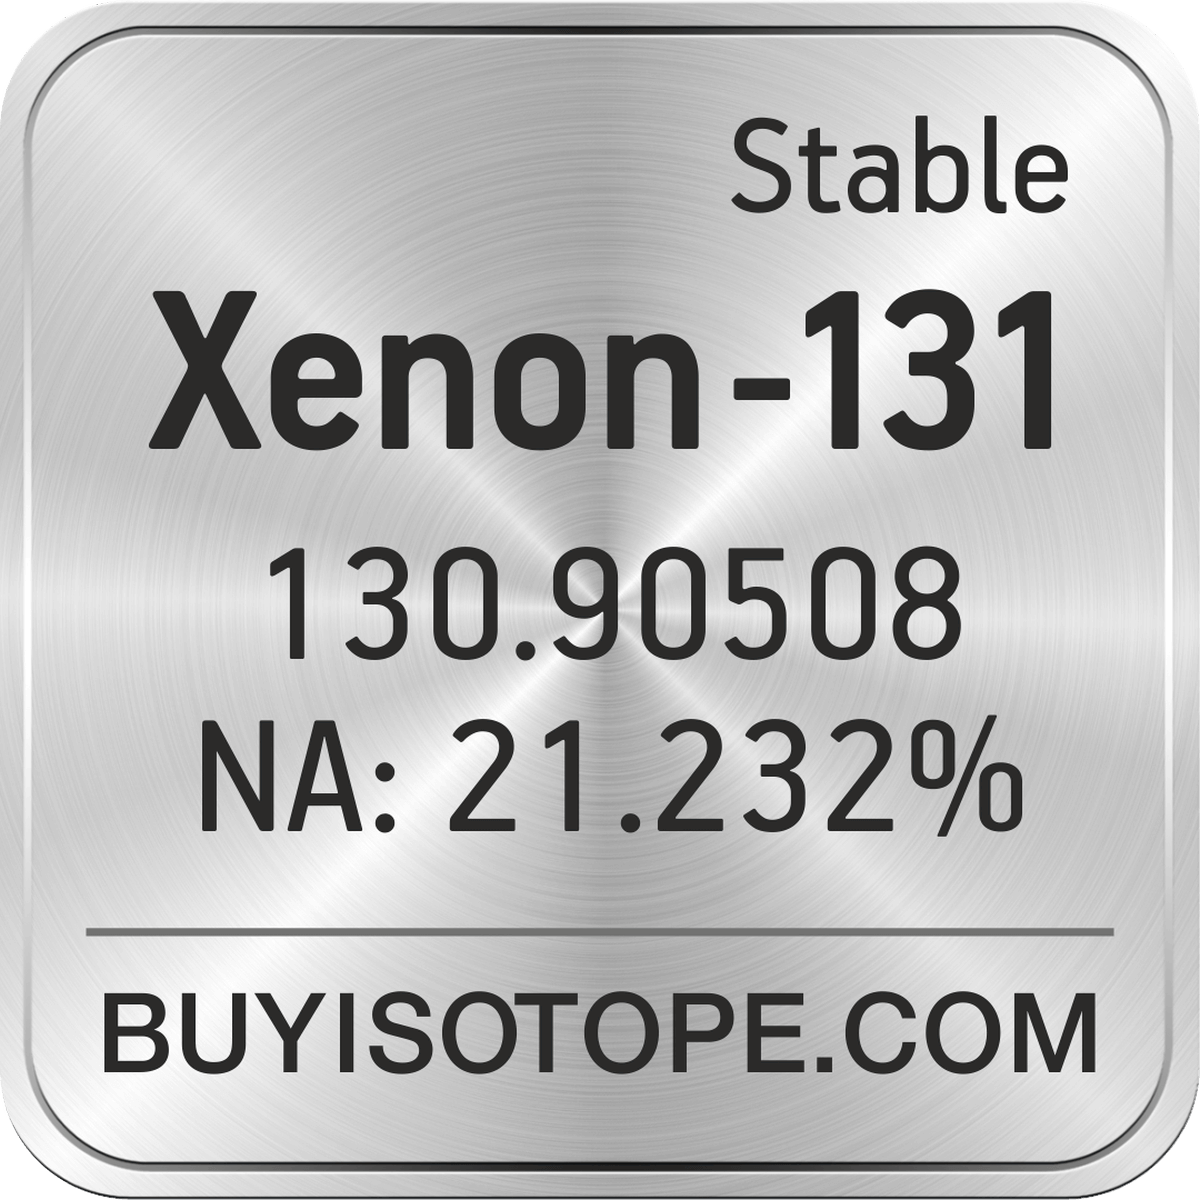 Xenon-131, Xenon-131 Isotope, Enriched Xenon-131, Xenon-131 Gas